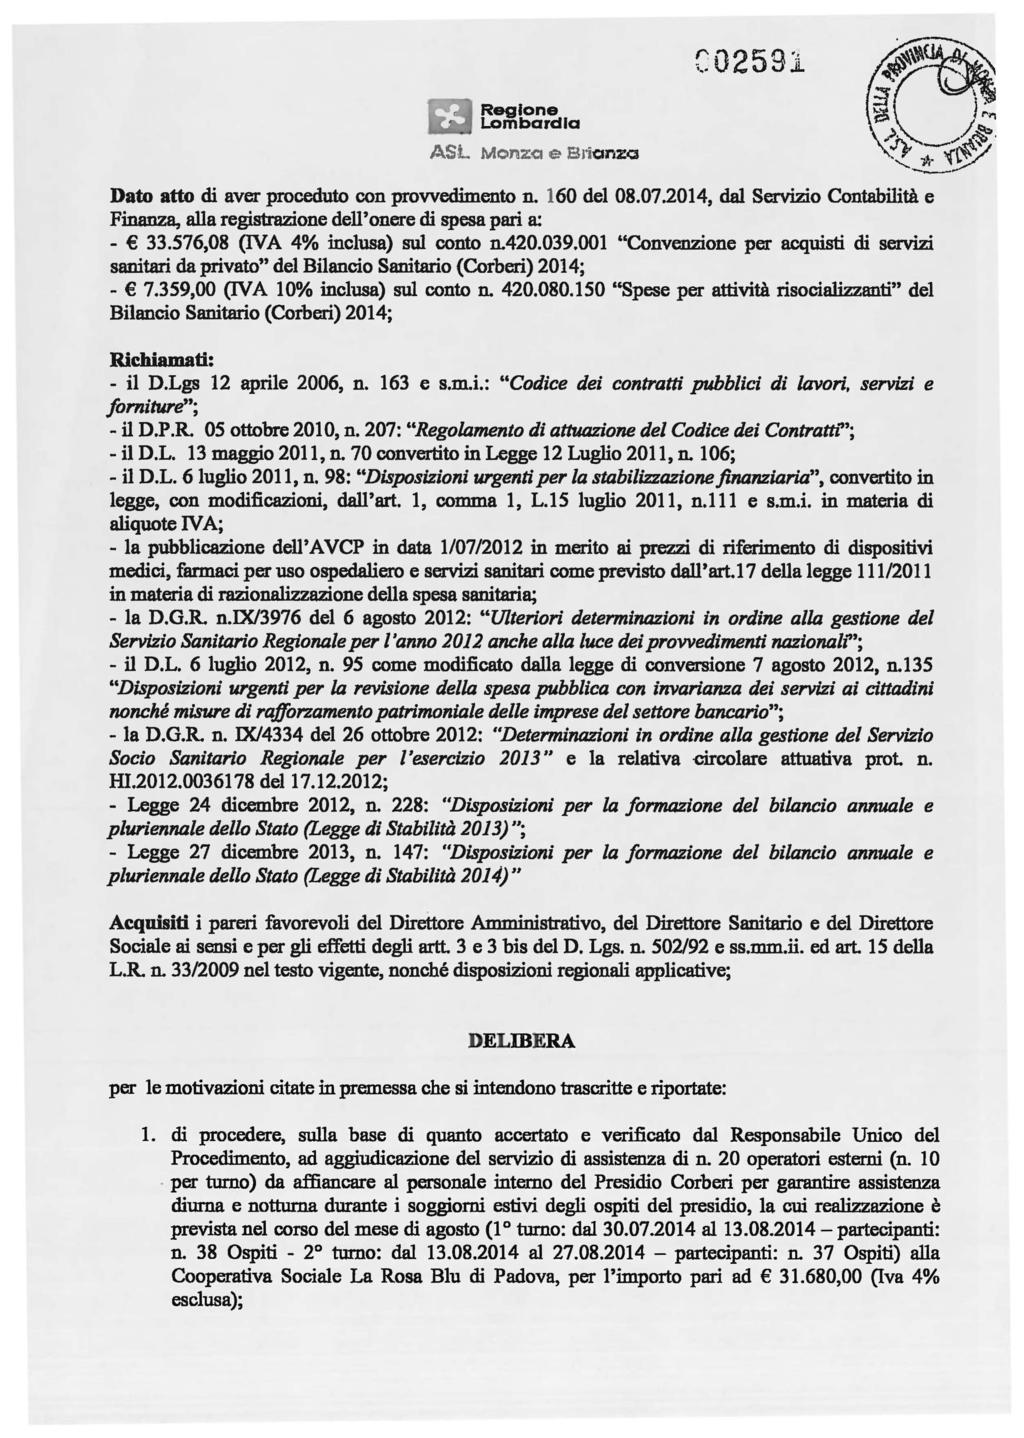 C02591 ASL Monza e BlianzQ Dato atto di aver proceduto con provvedimento n. 160 del 08.07.2014, dal Servizio Contabilità e Finanza, alla registrazione dell'onere di spesa pari a: - 33.